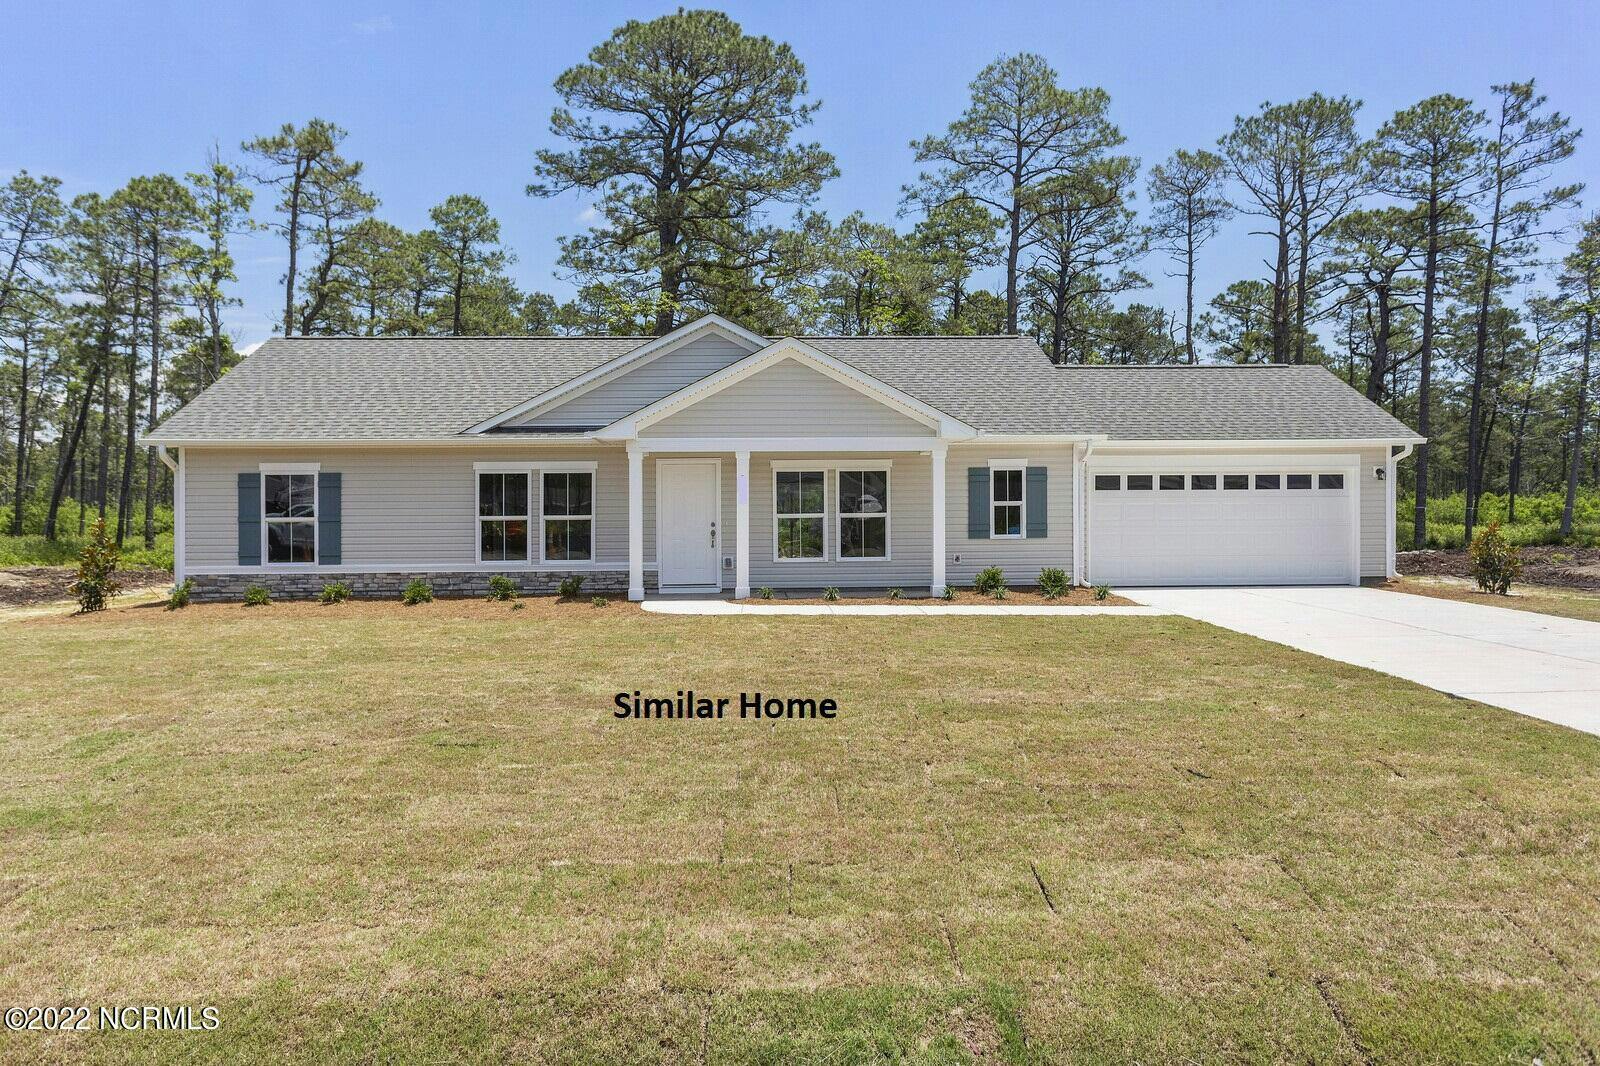 Sage - Similar Home